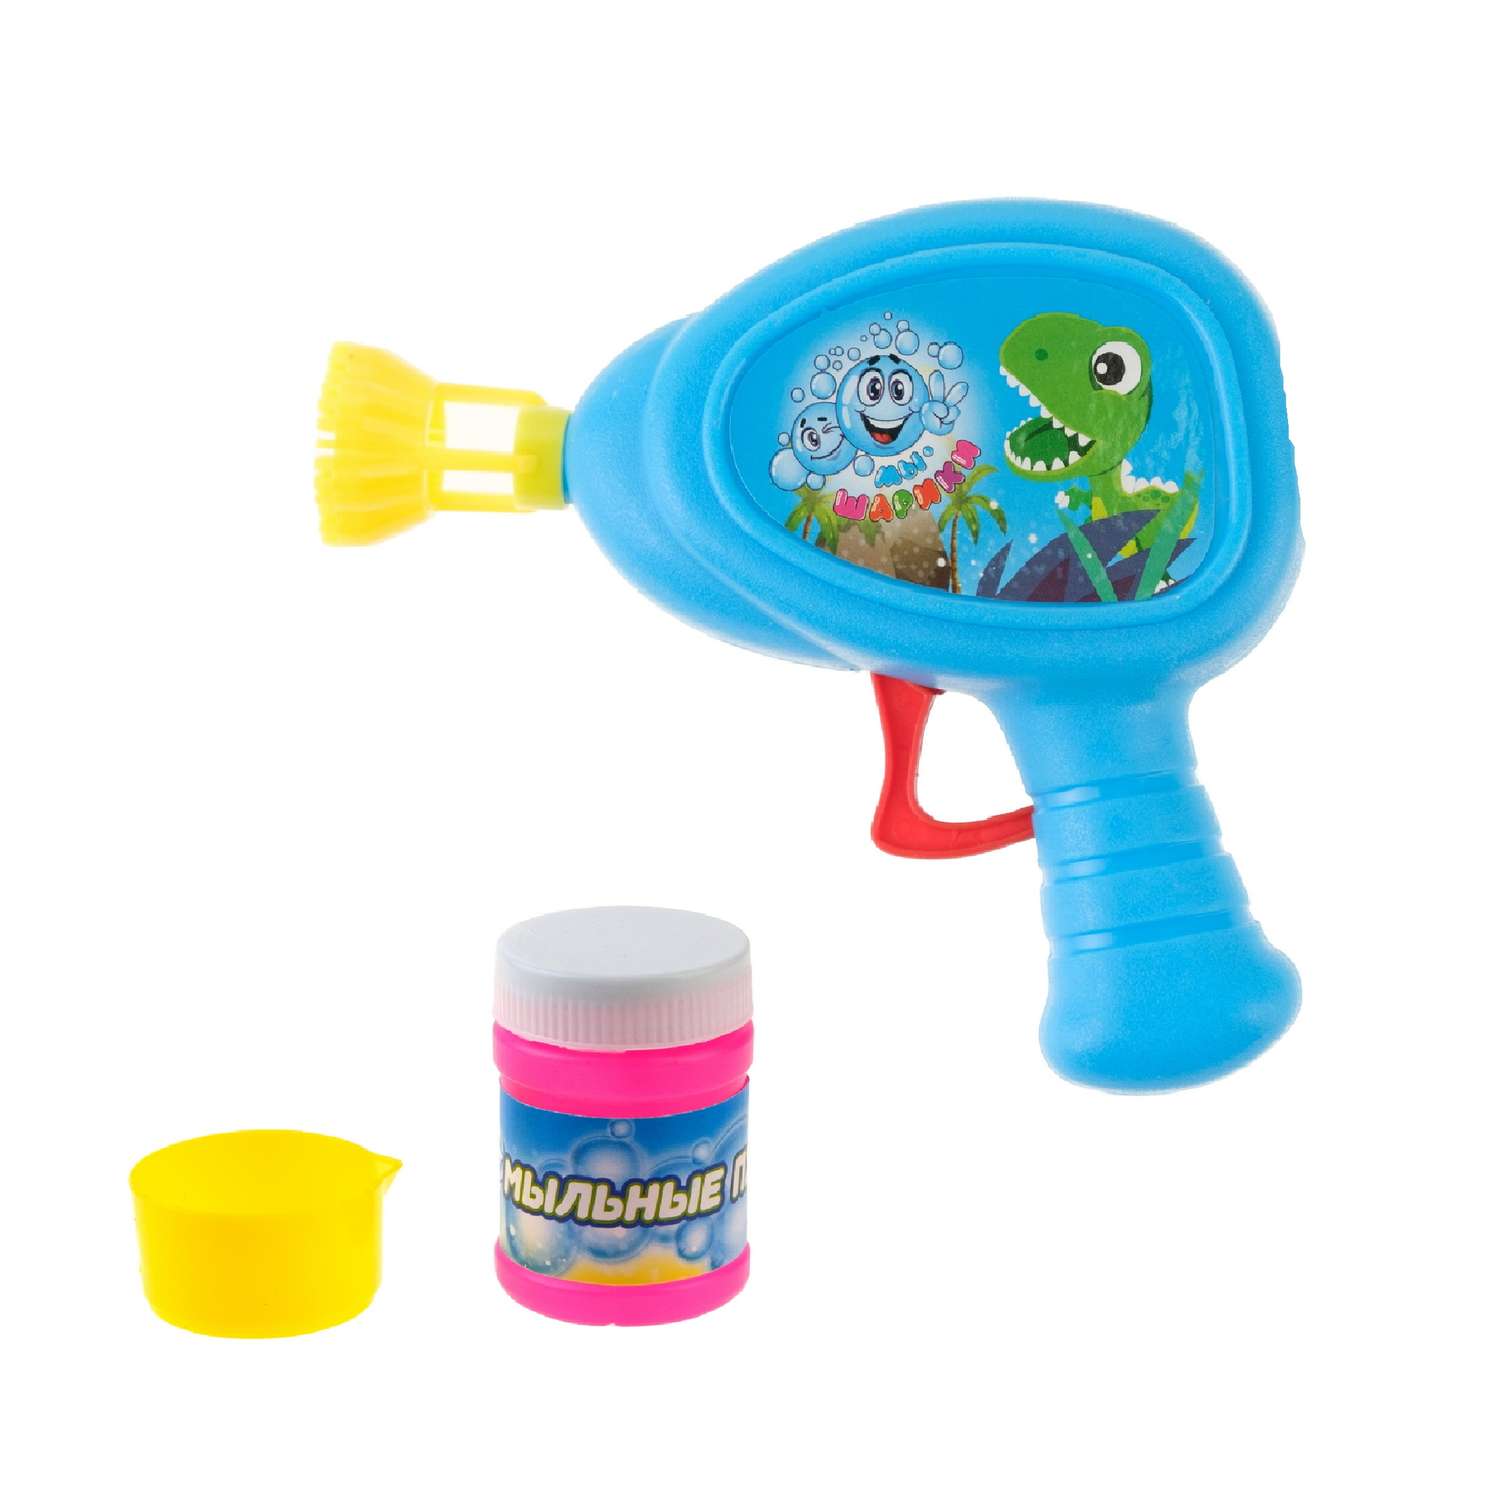 Генератор мыльных пузырей Мы-шарики 1YOY с раствором Динозаврик пистолет бластер аппарат детские игрушки для улицы и дома - фото 1